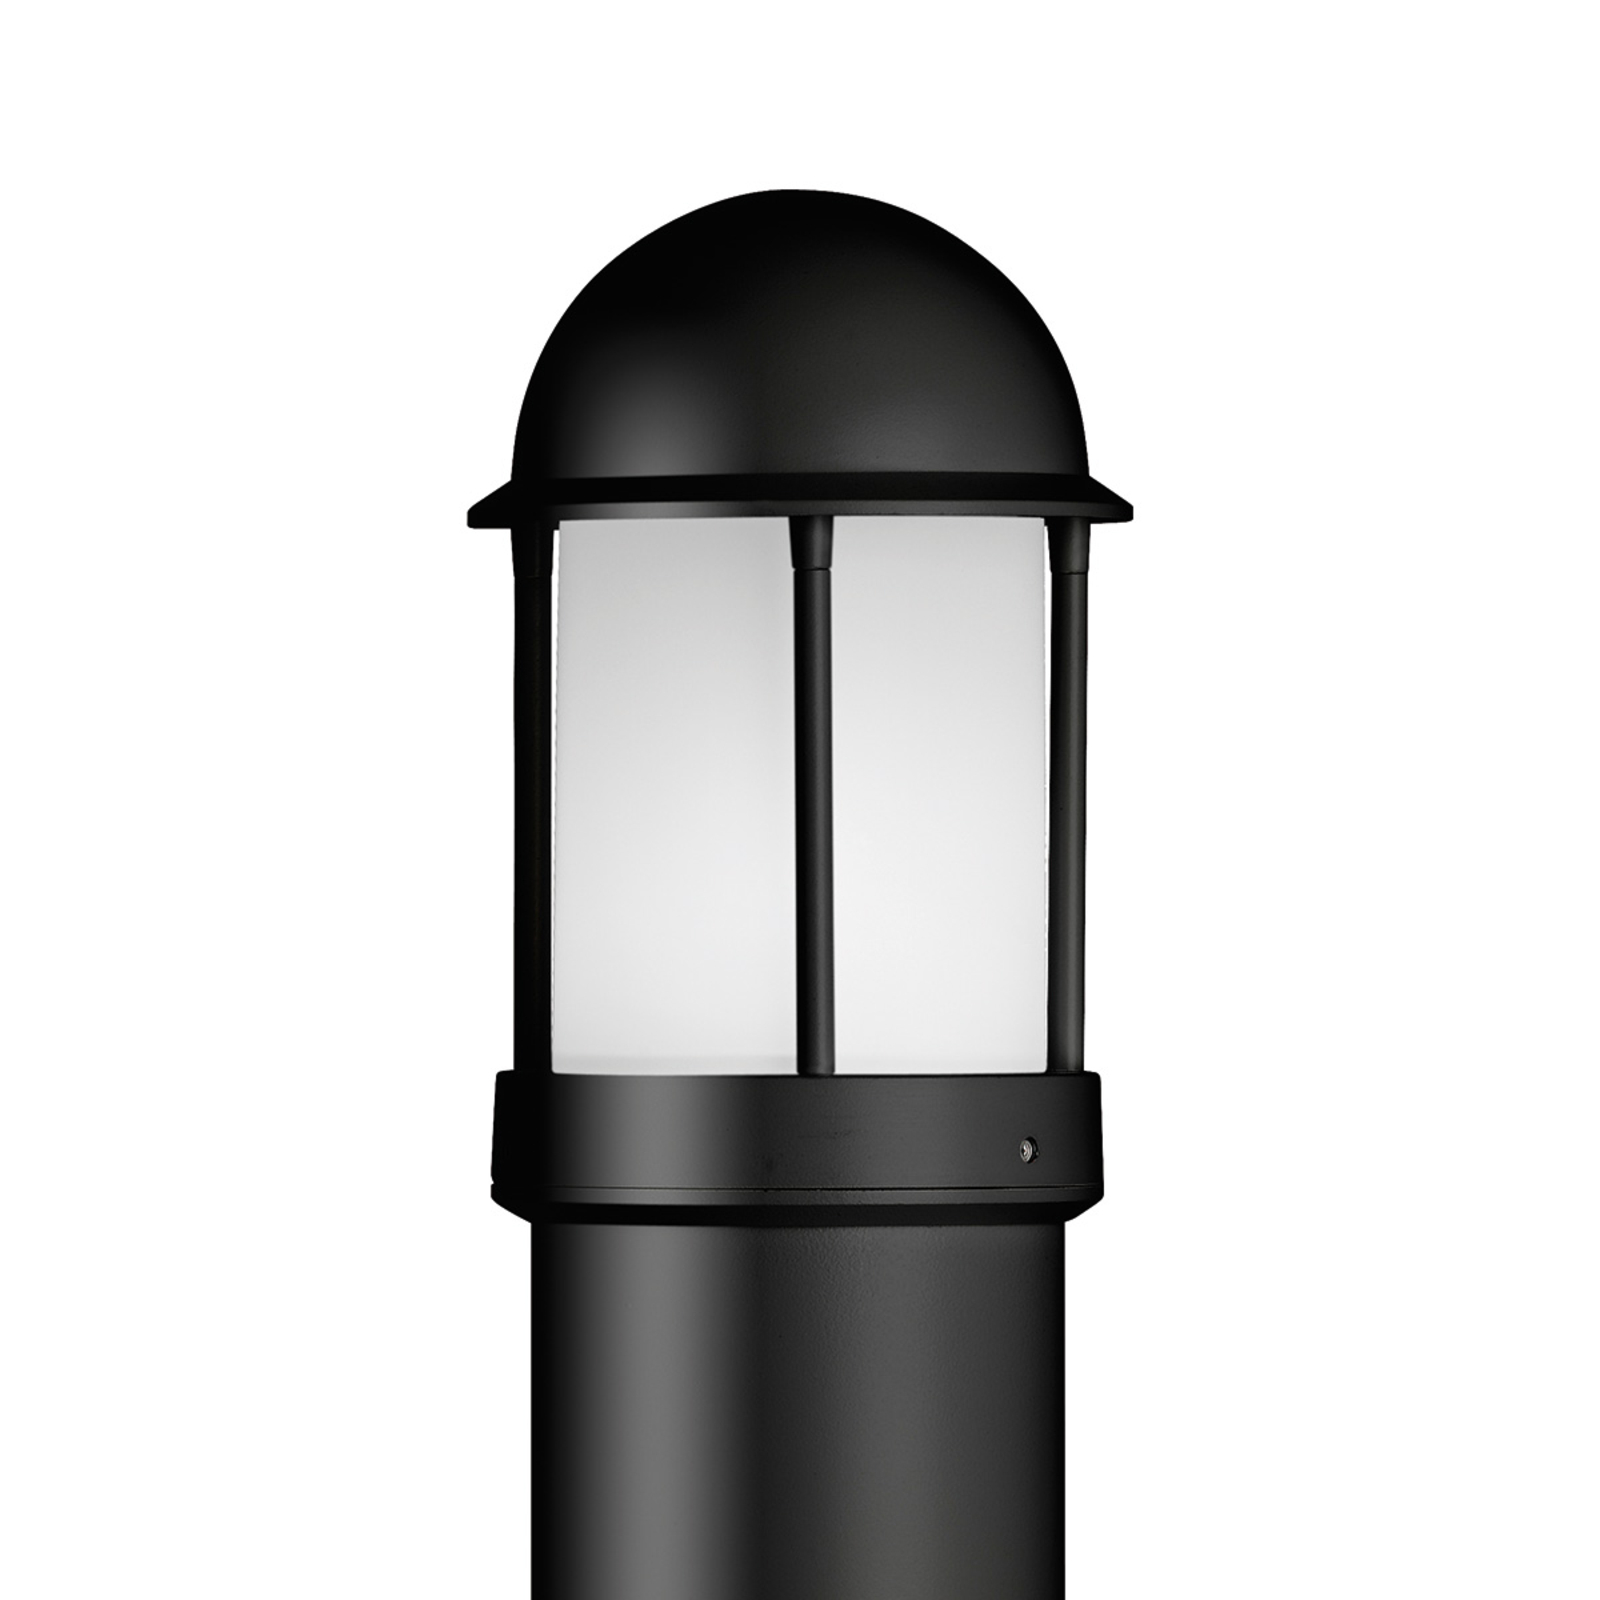 Gatelampe Marco av aluminium, svart